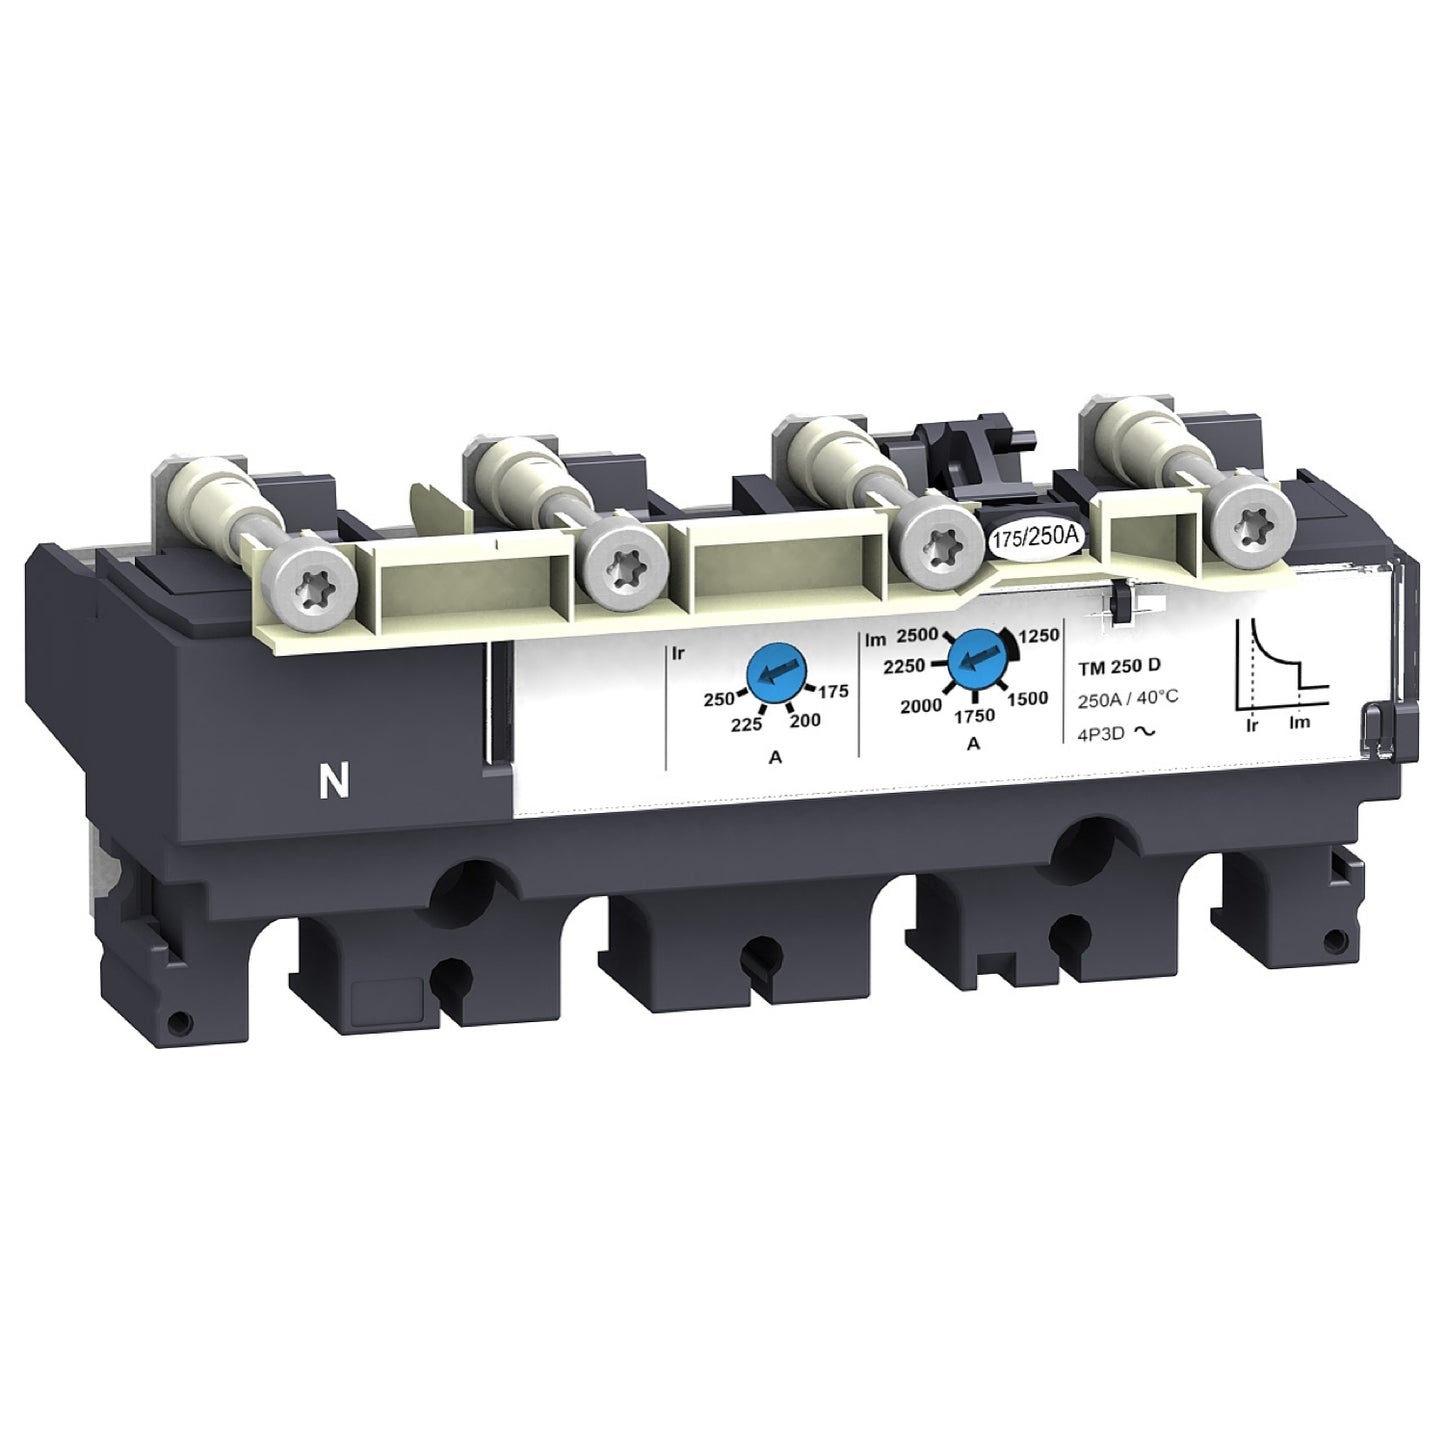 LV429046 Trip unit TM25D for ComPact NSX100 circuit breakers